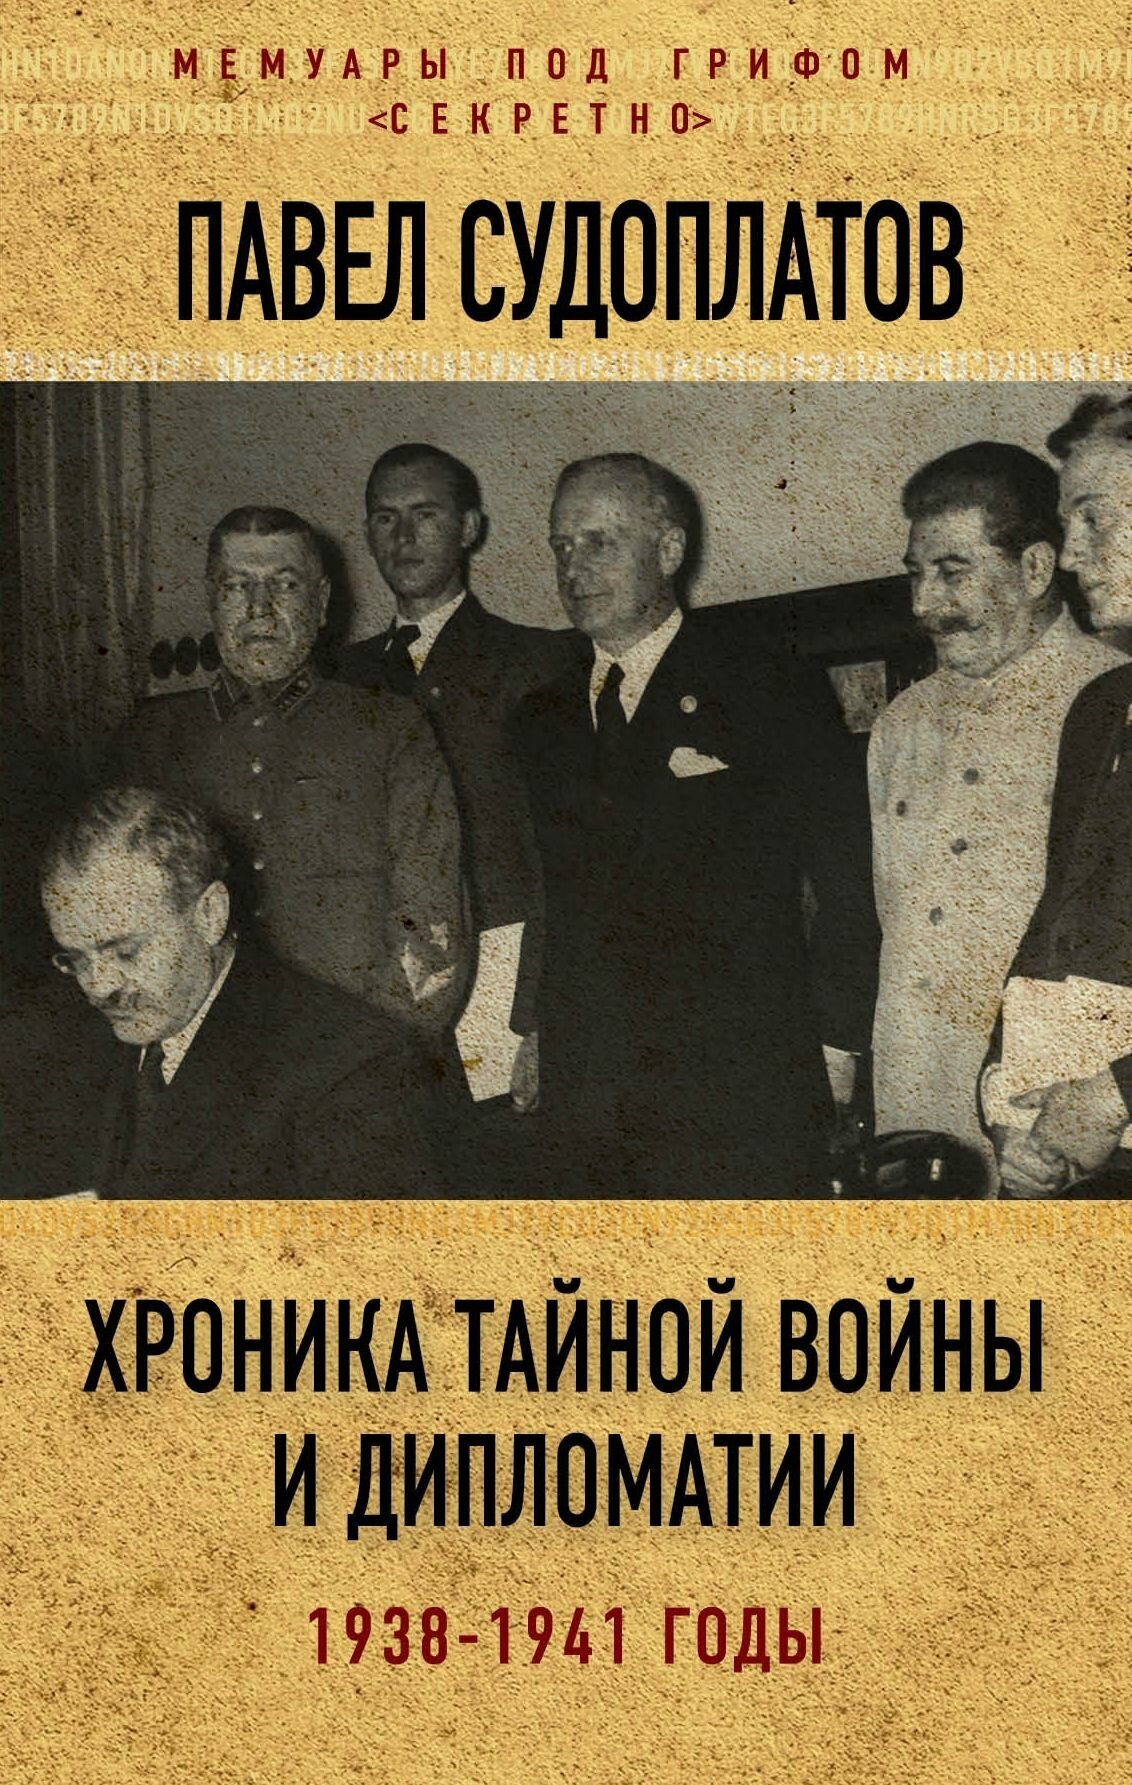 Хроника тайной войны и дипломатии 1938-1941 годы